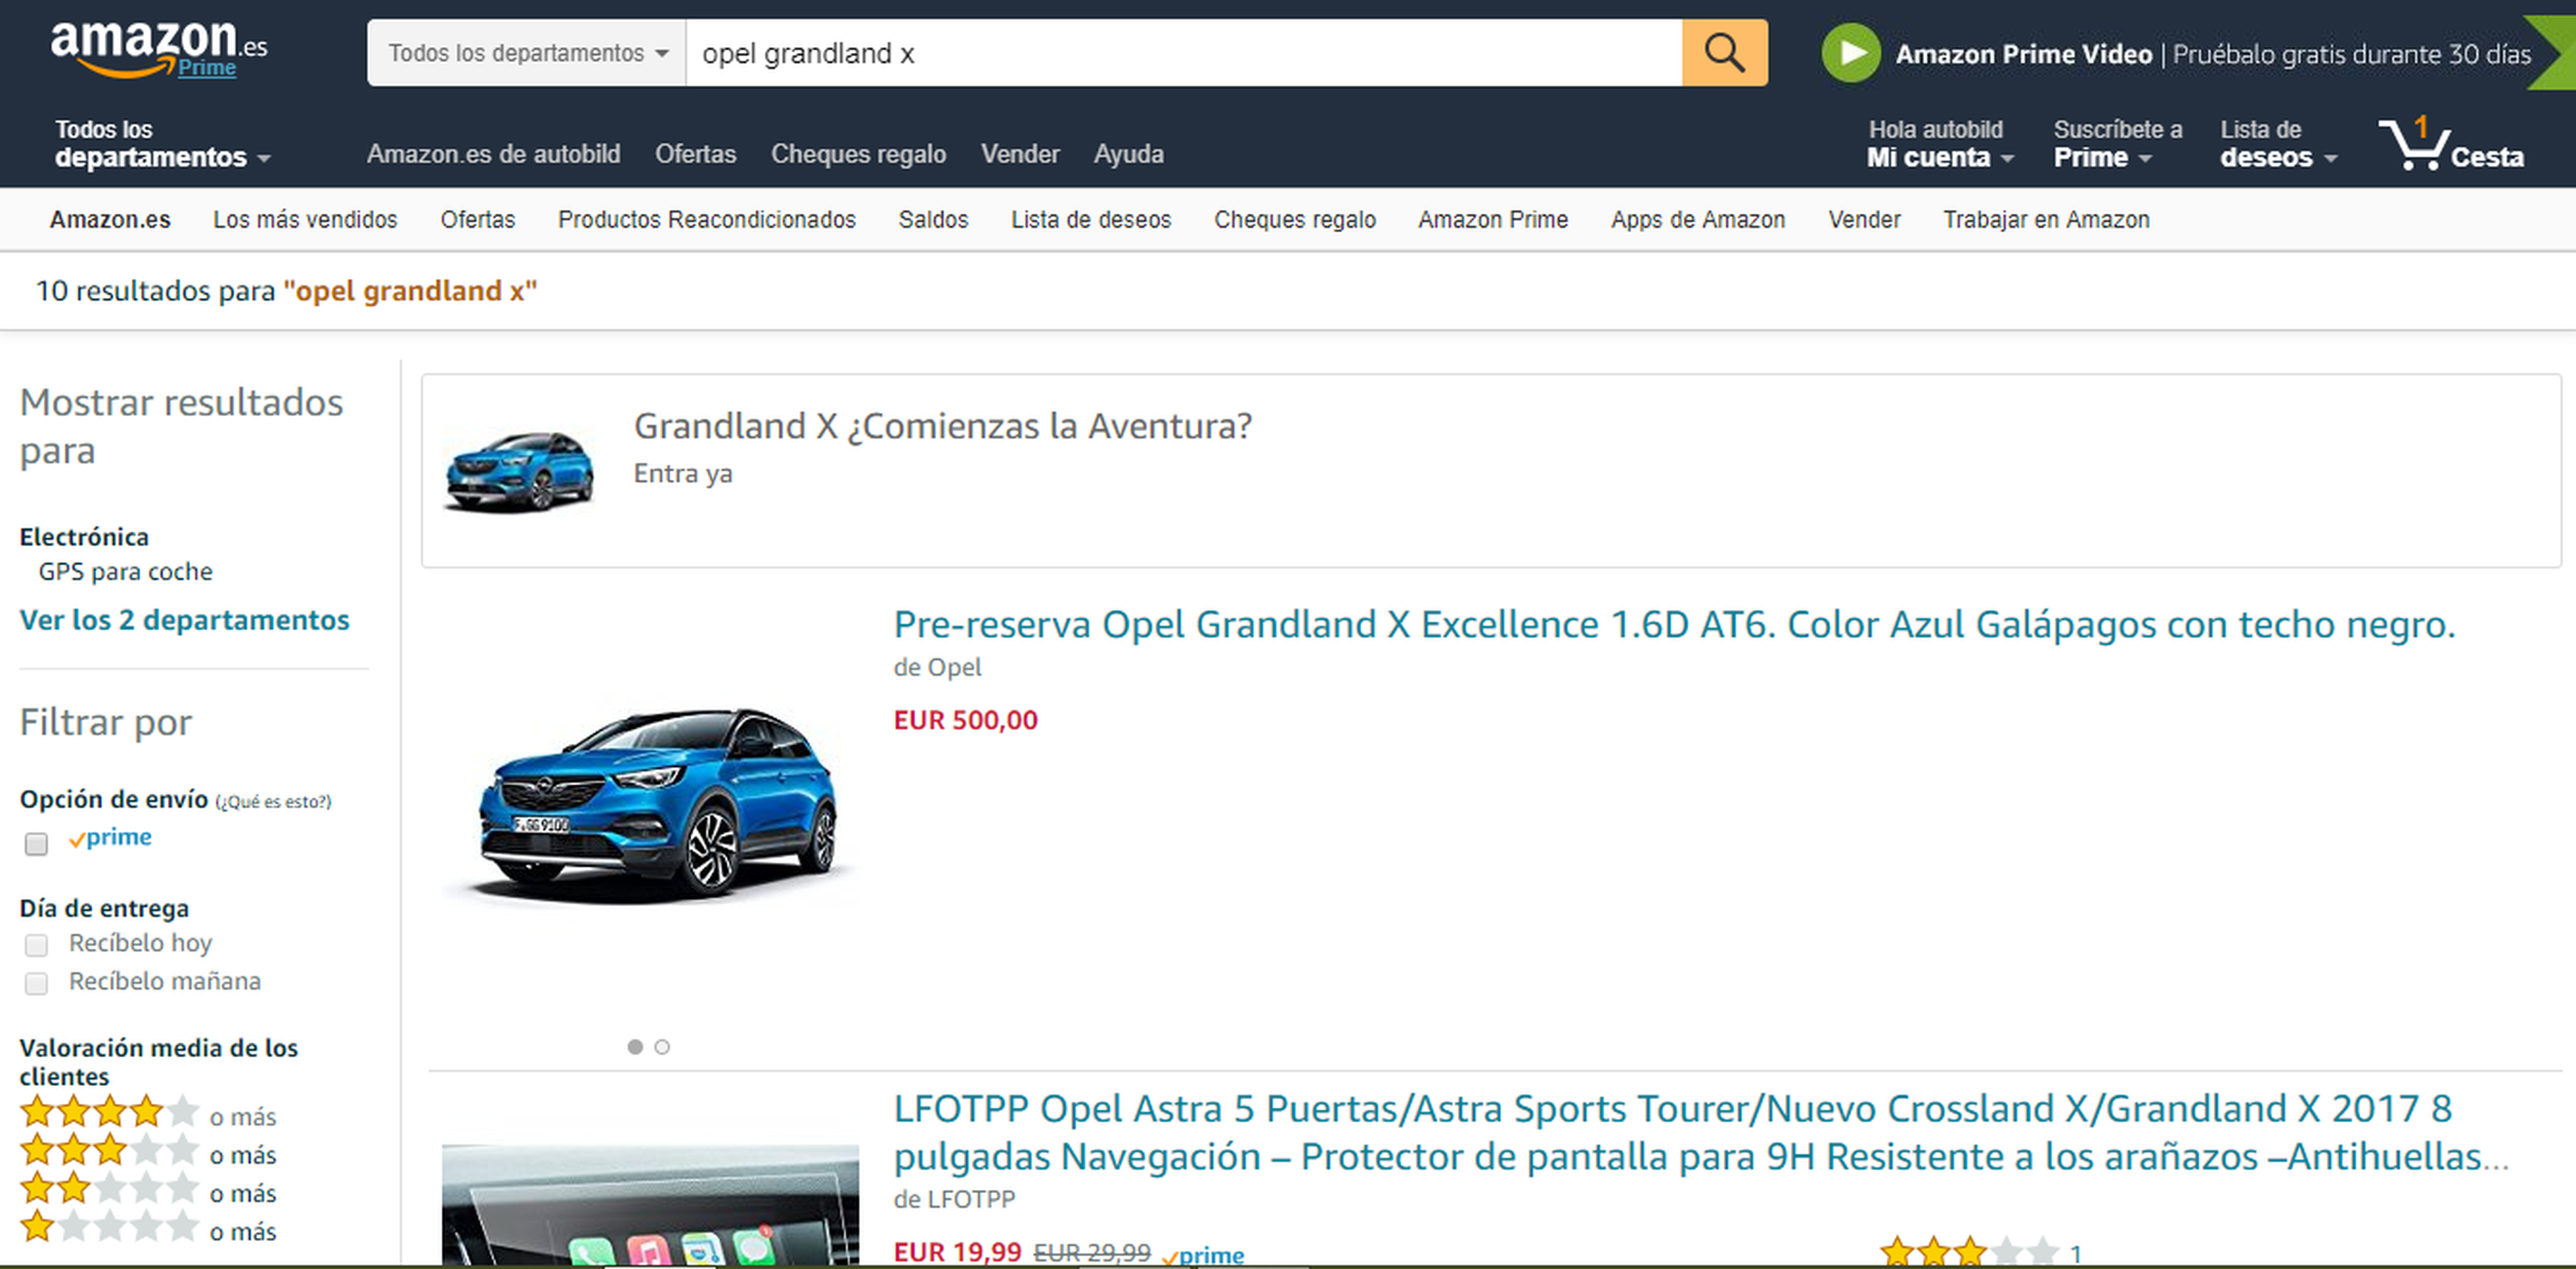 Cómo comprar un coche por Amazon